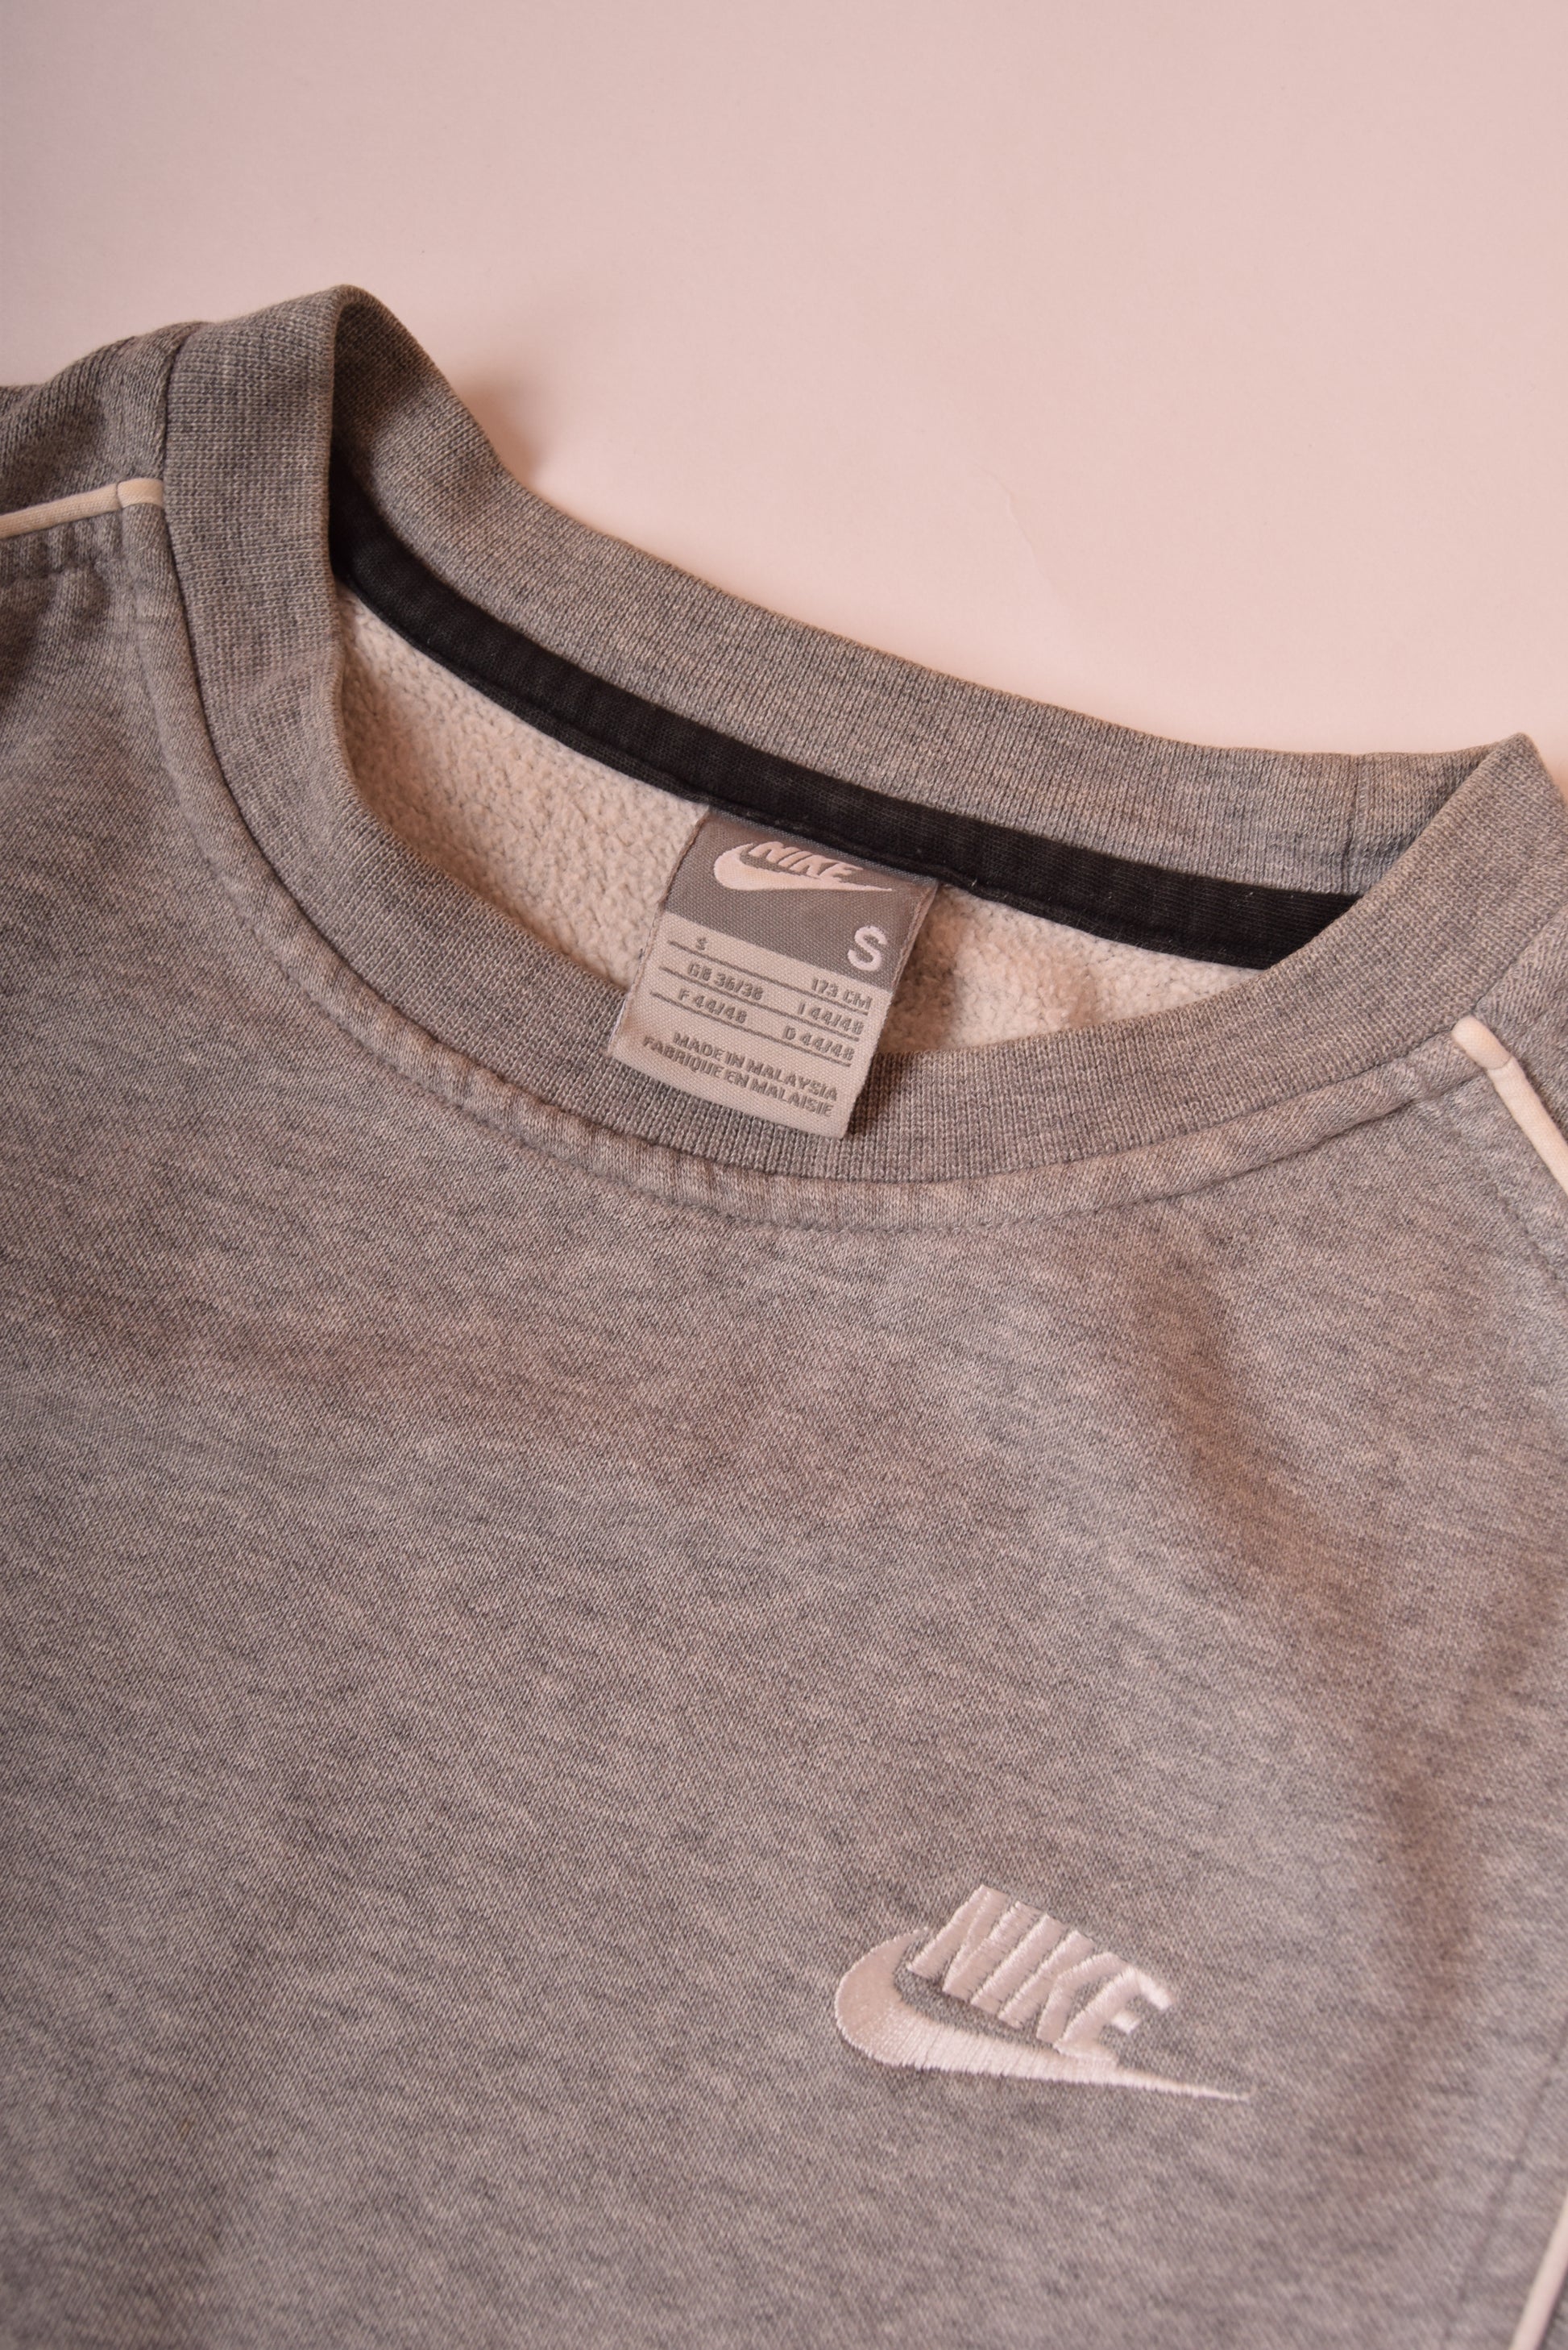 Nike Sweatshirt '00's Grey Size S